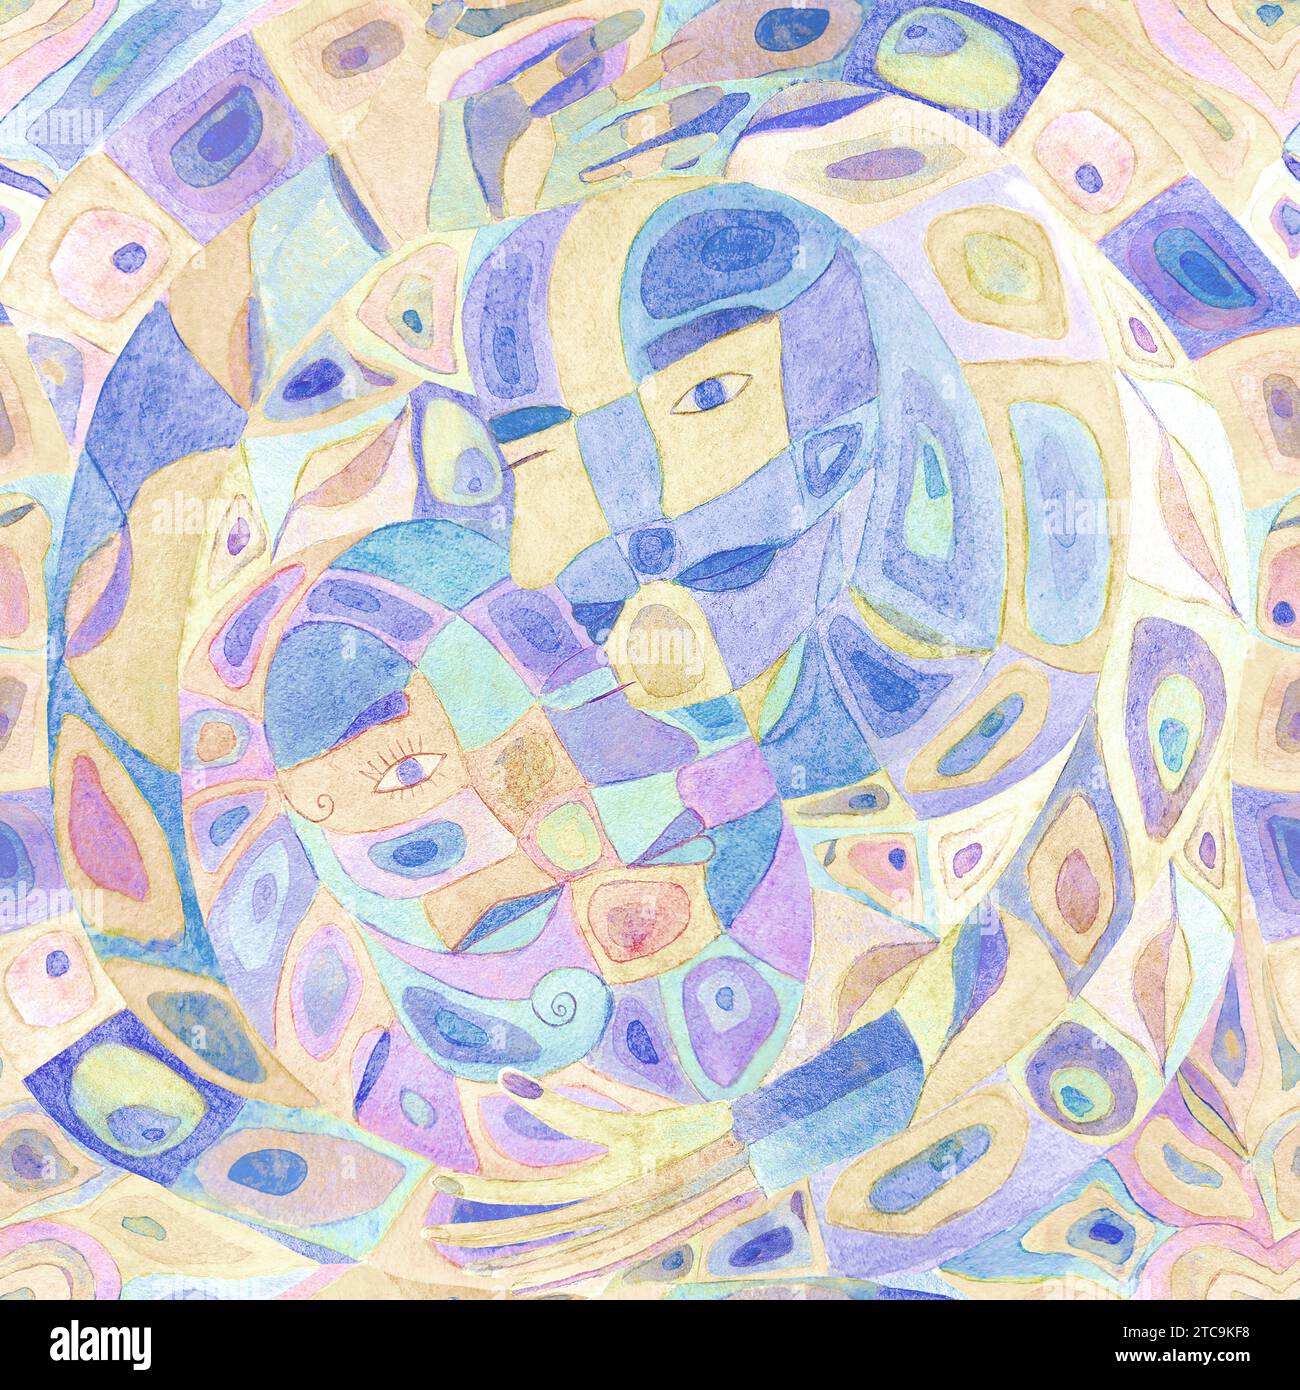 Abstrakter Aquarellsymbolismus mehrfarbiger Hintergrund. Handgezeichnet ruhige Farbflecken nahtloses Muster. Aquarellabstraktion. Mann, Frau, Yin und Yang h Stockfoto